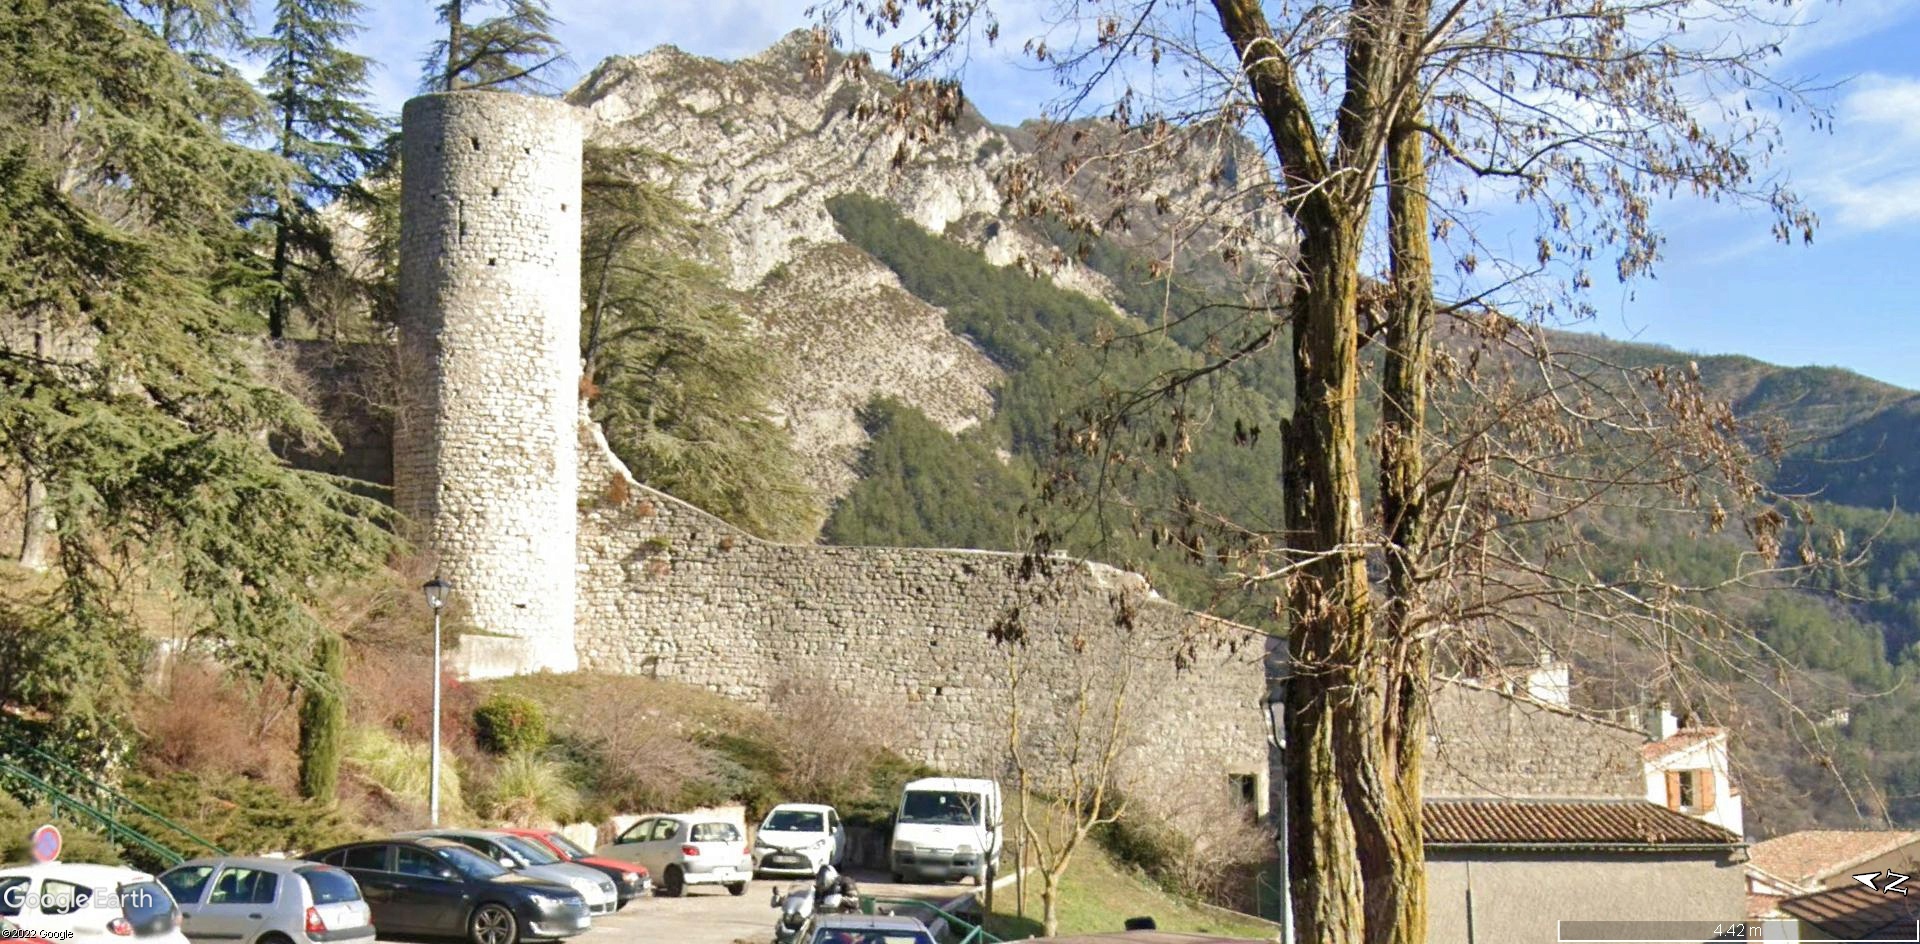 La citadelle de Sisteron:  visite virtuelle d'hier et d'aujourd'hui.  - Page 2 A2565